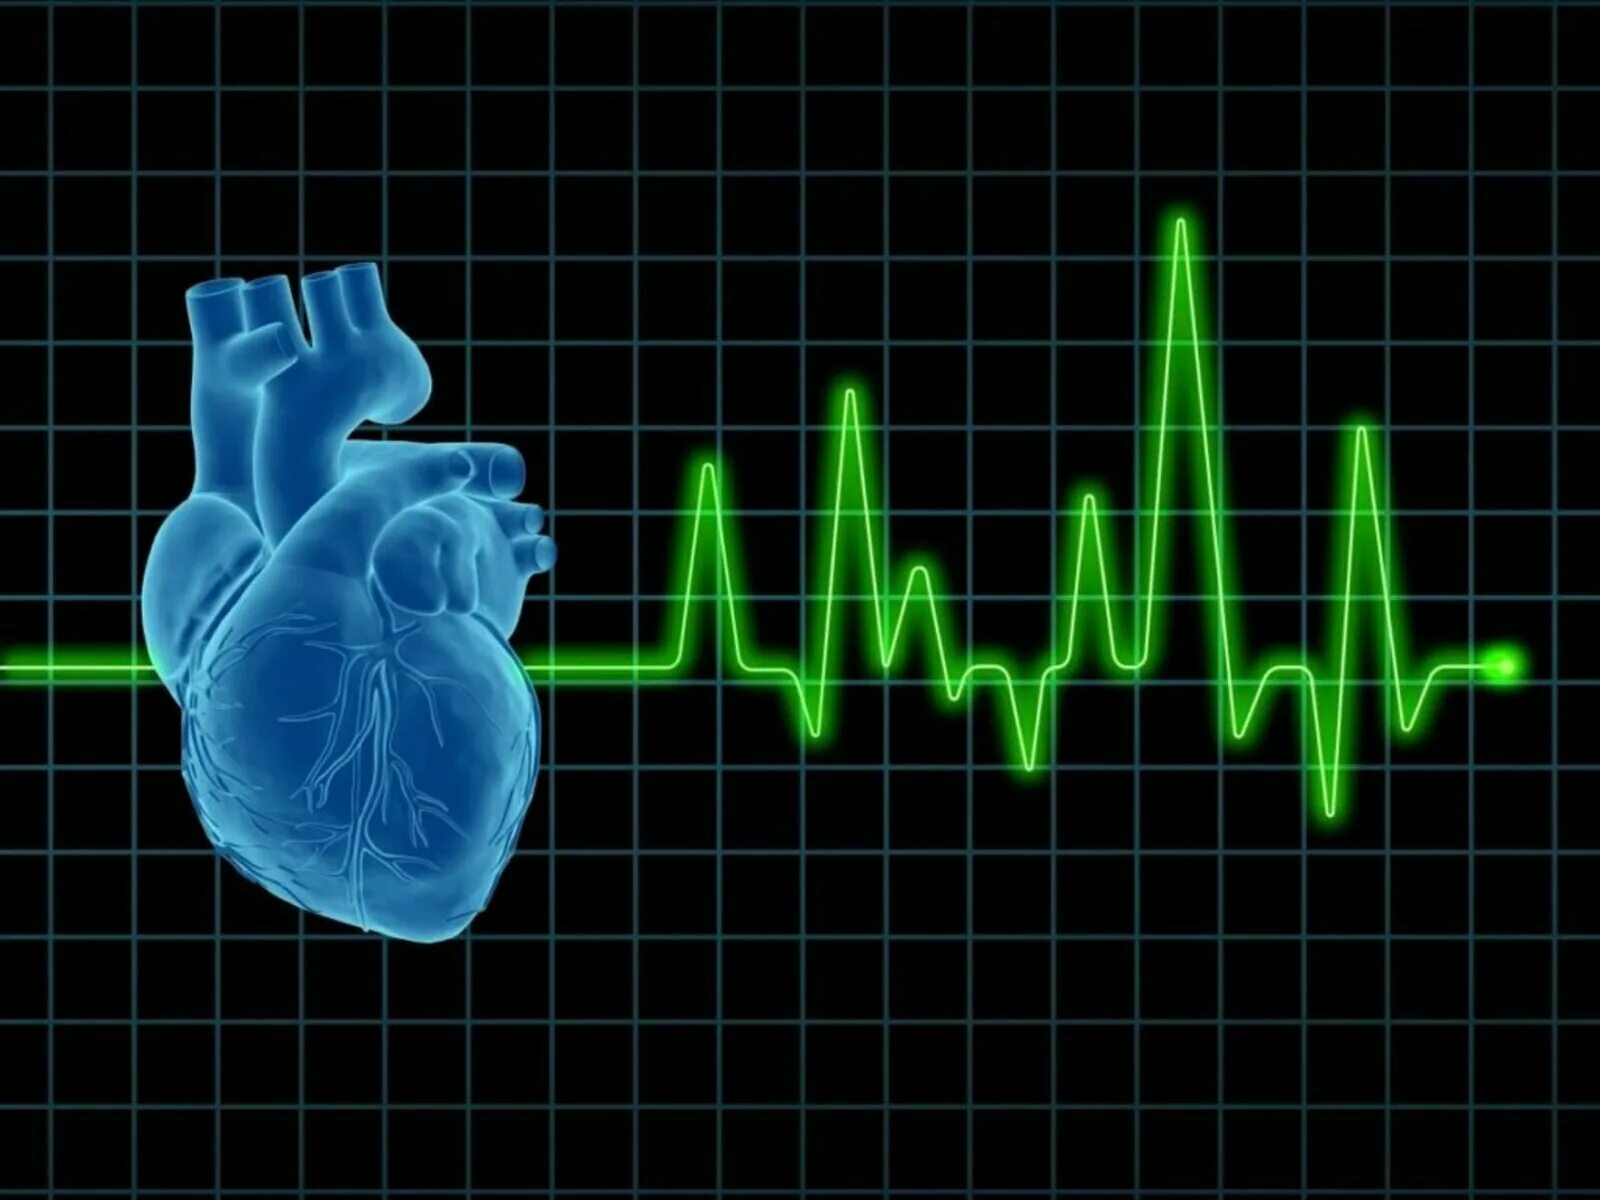 Сердце учащенное сердцебиение. "Ритм" (сердечный). Кардиология аритмии. Ритм биения сердца. Кардиограмма сердца.